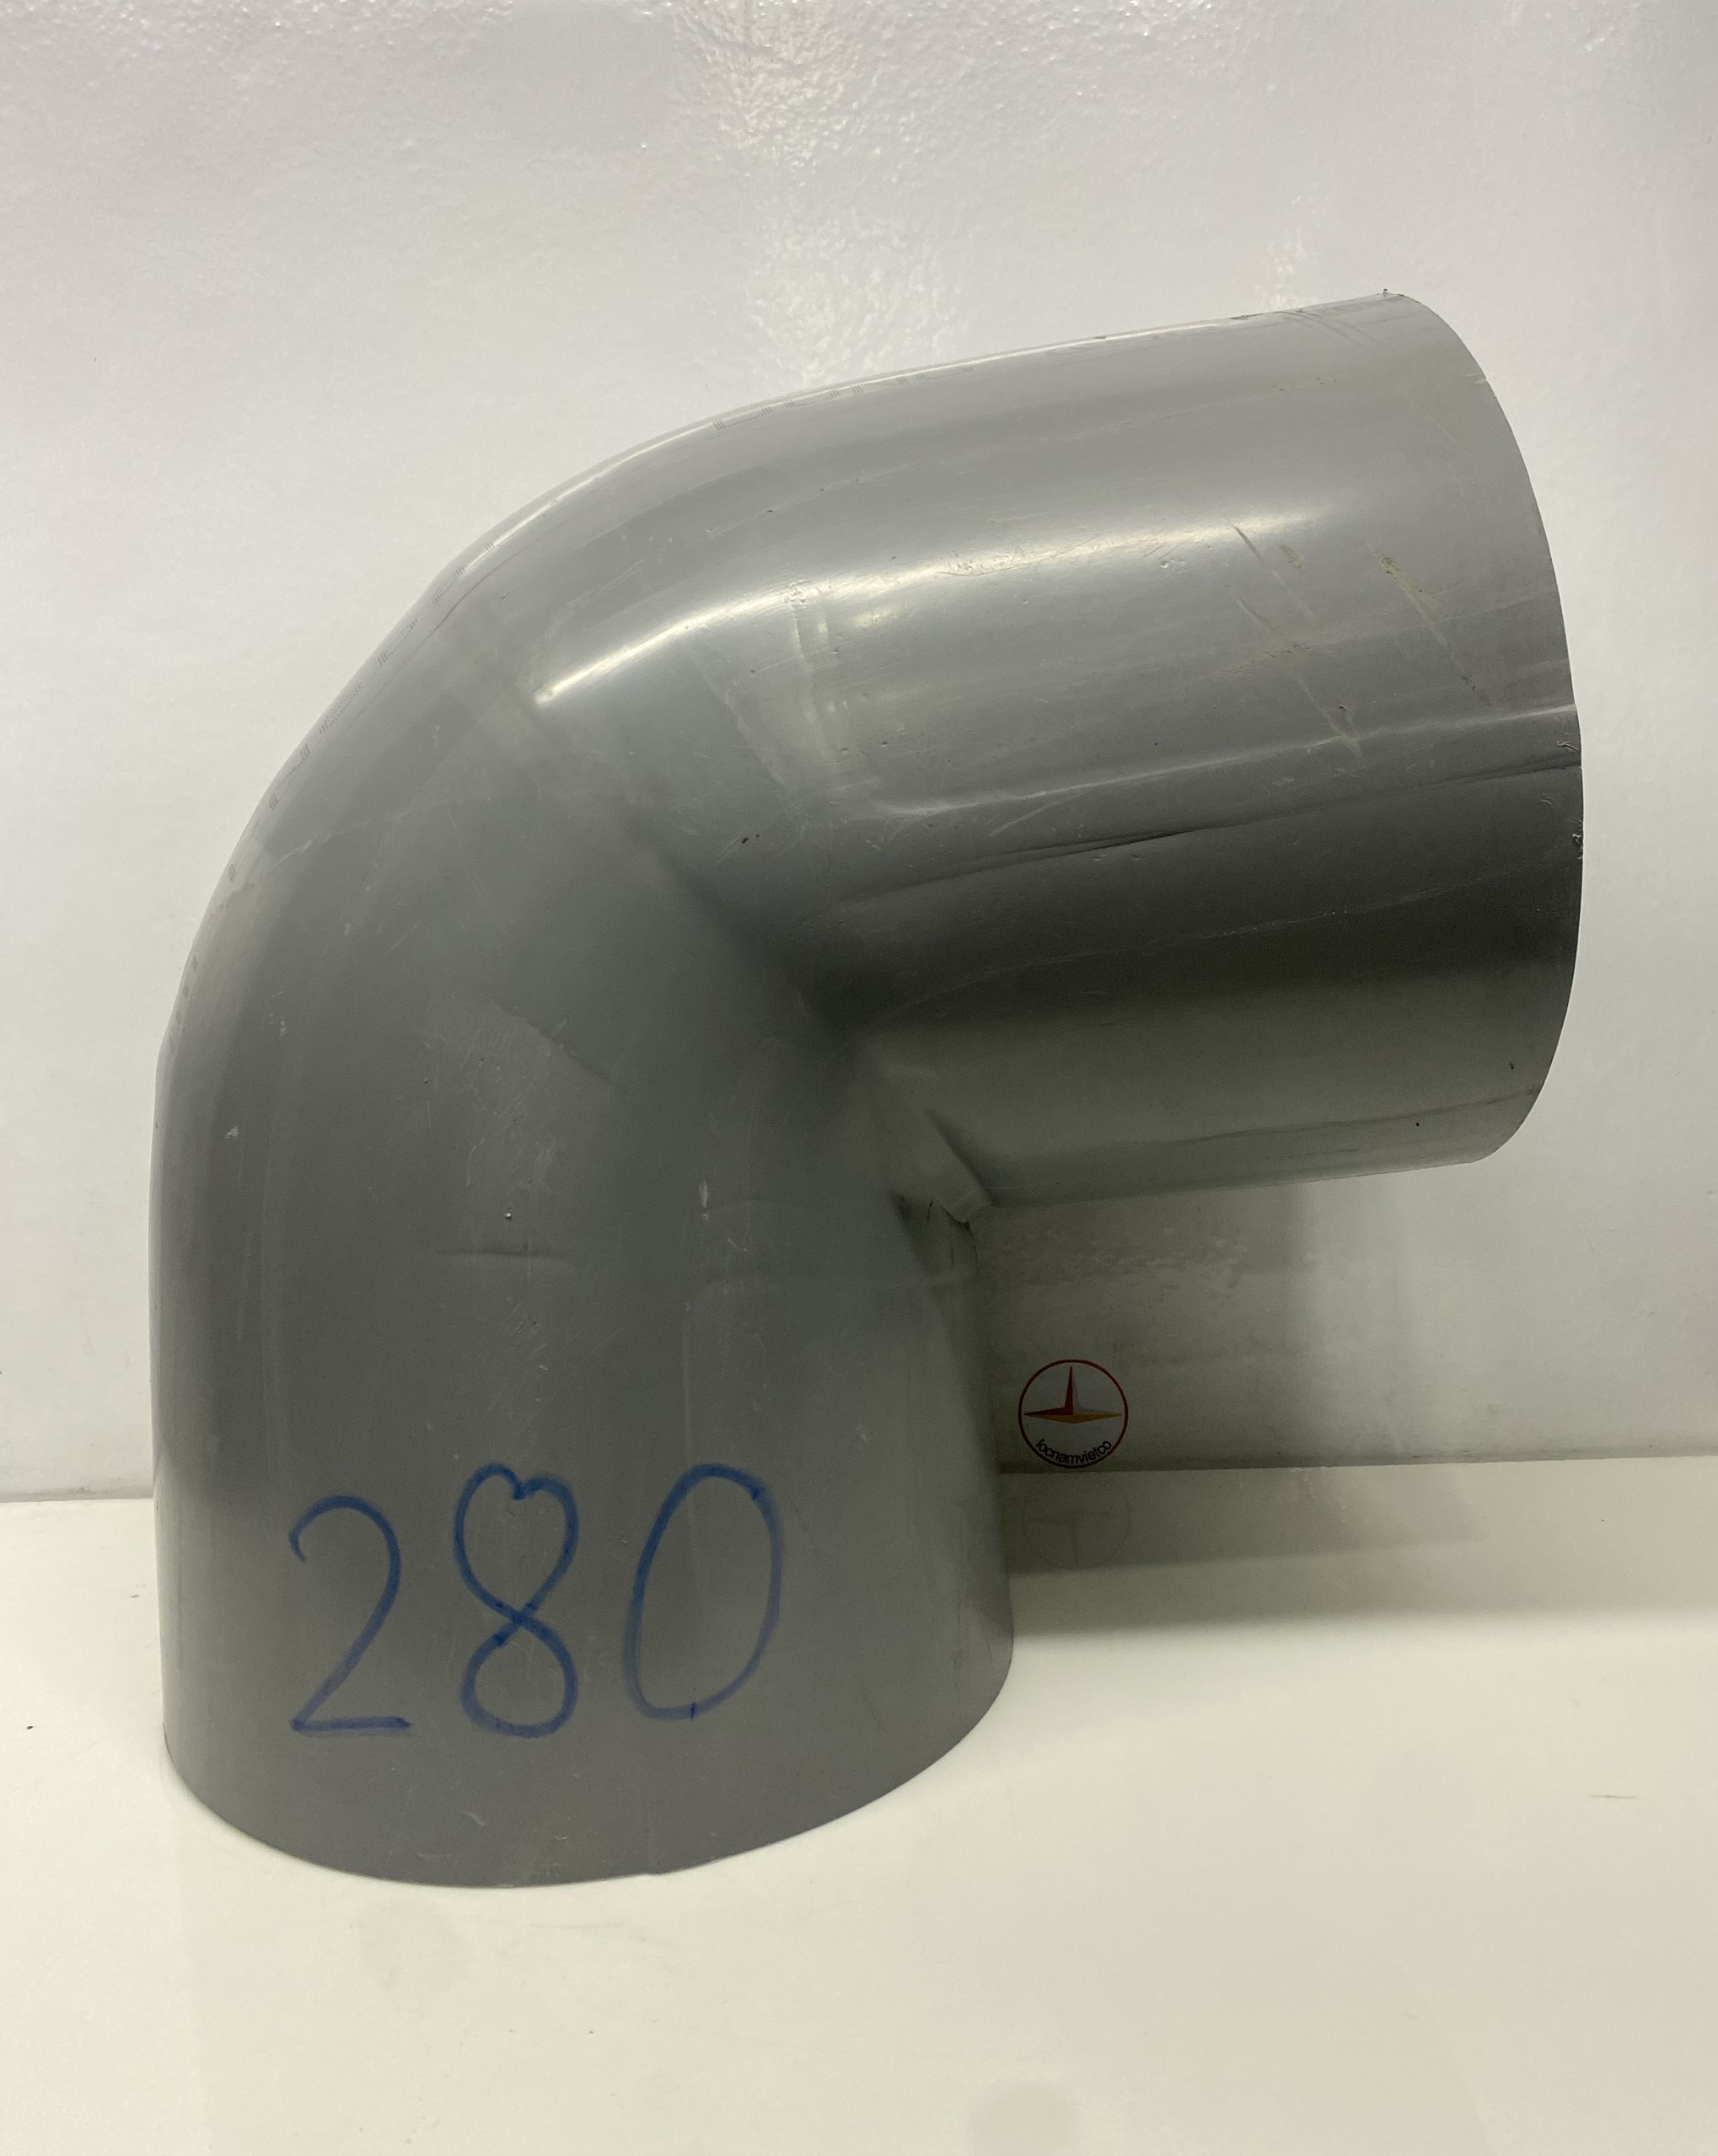 Co 280 nhựa PVC (Elbow)_C280